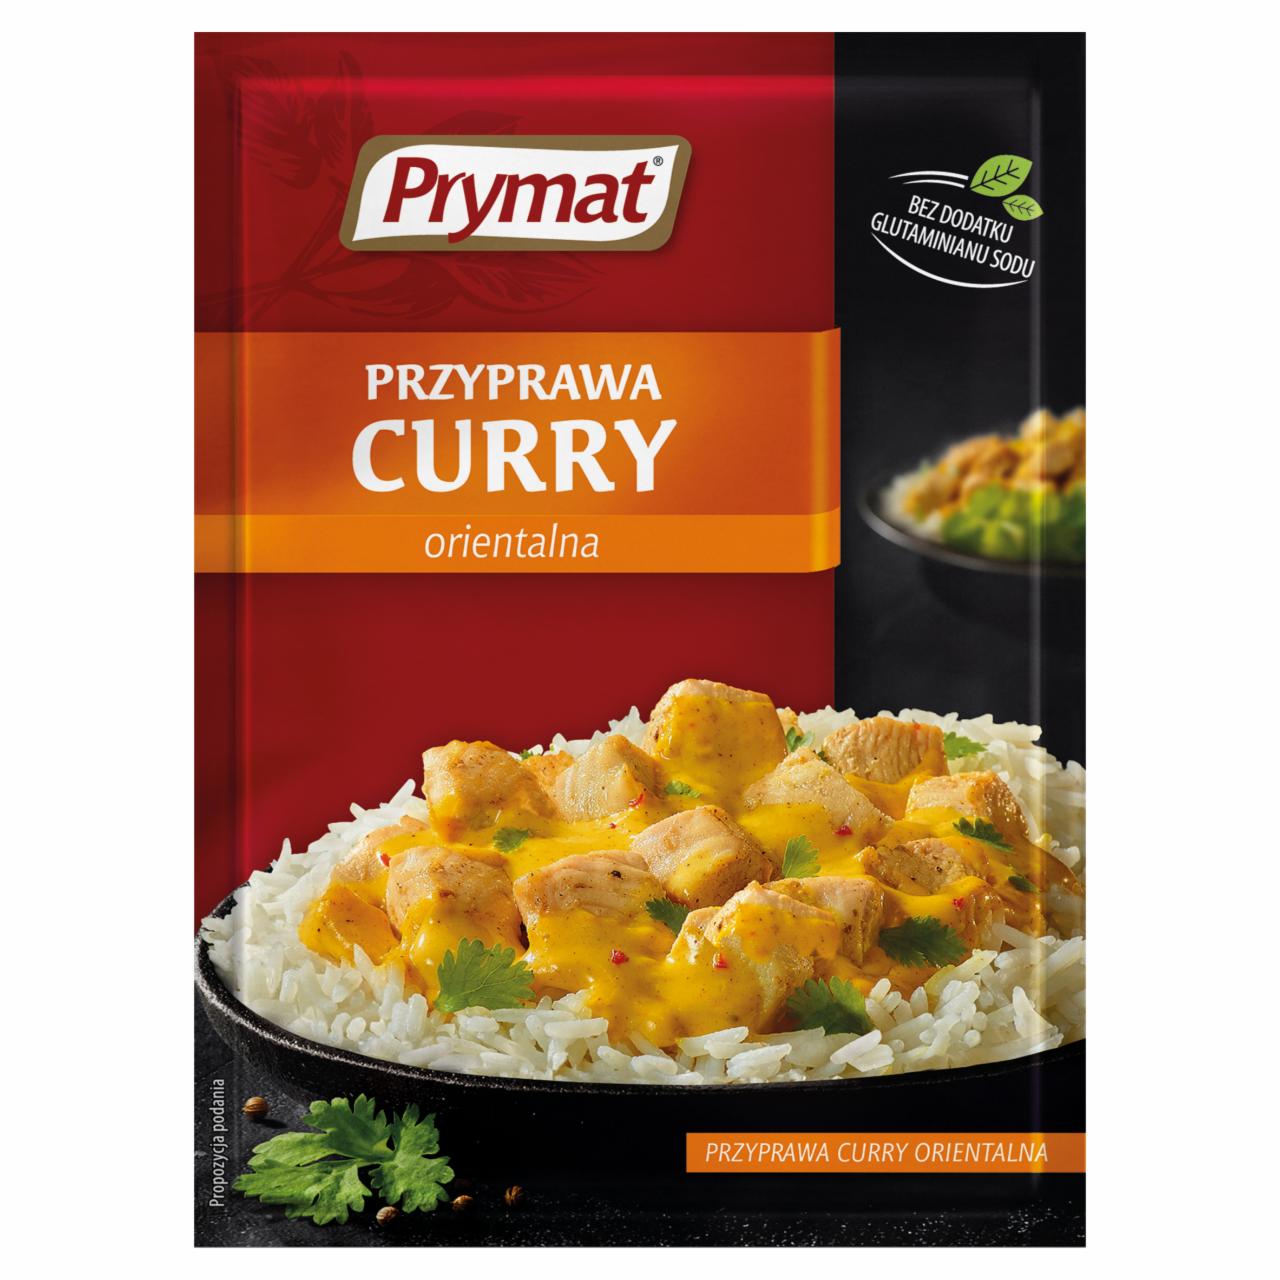 Zdjęcia - Przyprawa curry orientalna Prymat